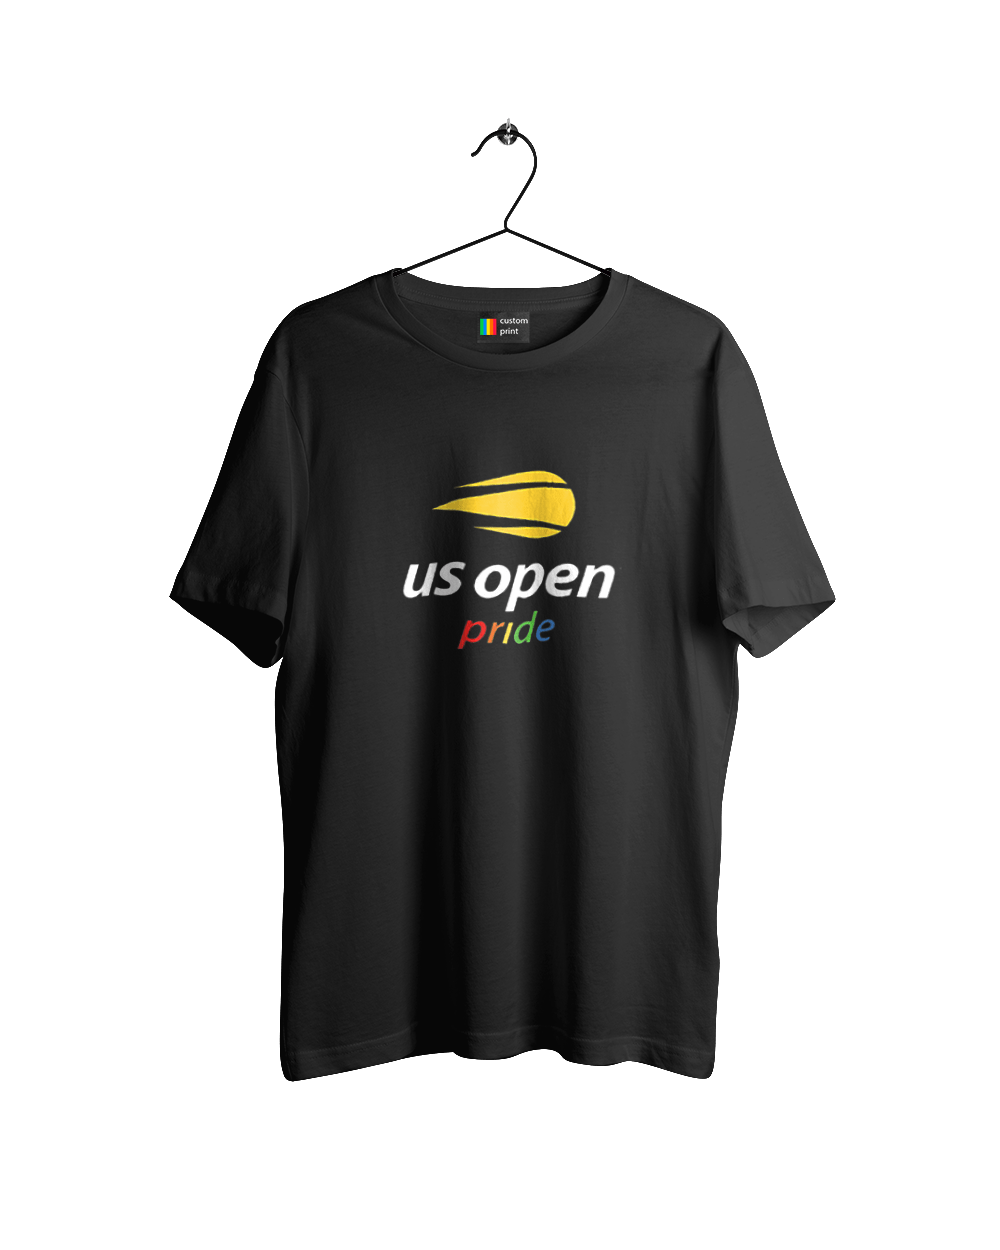 Тенісний турнір US Open pride